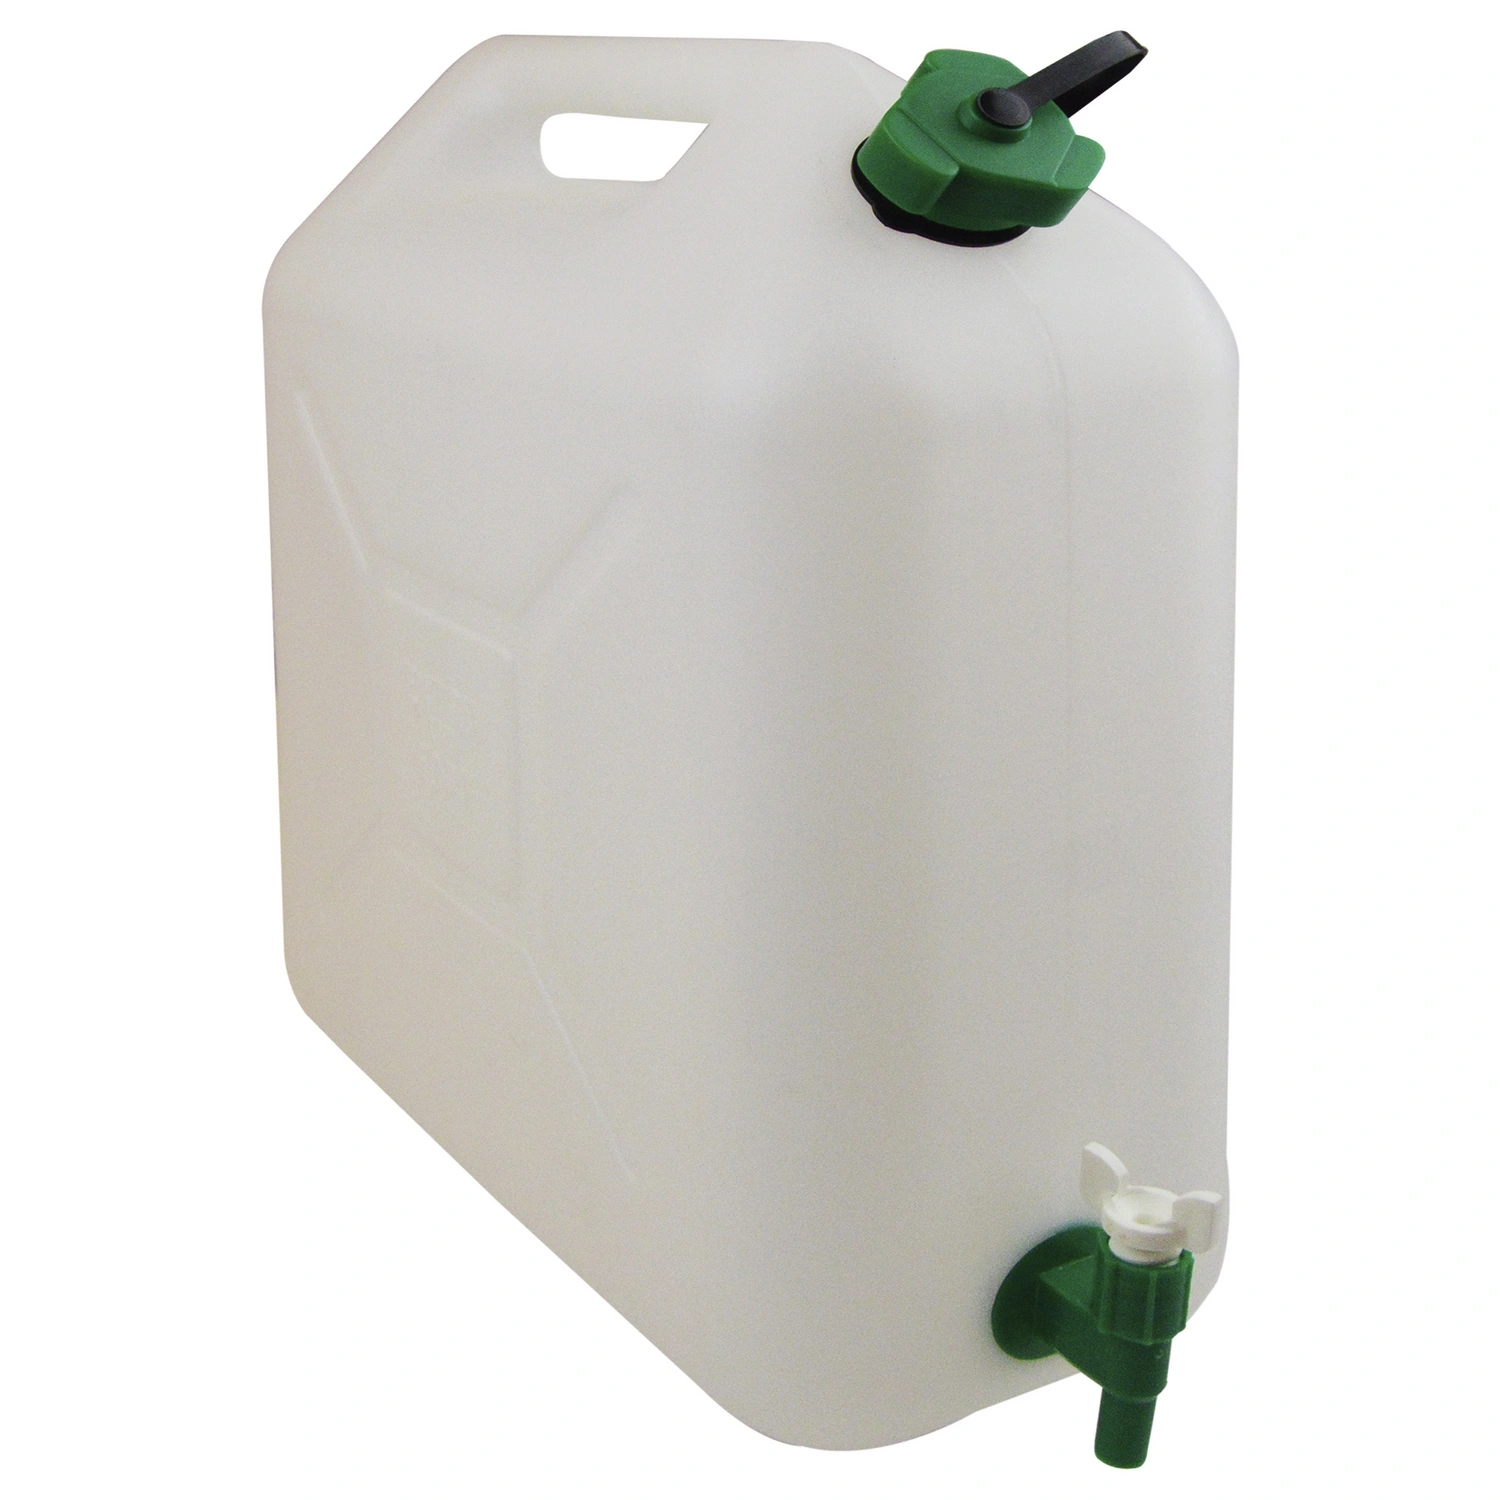 20L Trinkwasserkanister, 20 Liter, Kunststoff Wasser  Kanister Lebensmittelecht, Wasserkanister mit Hahn